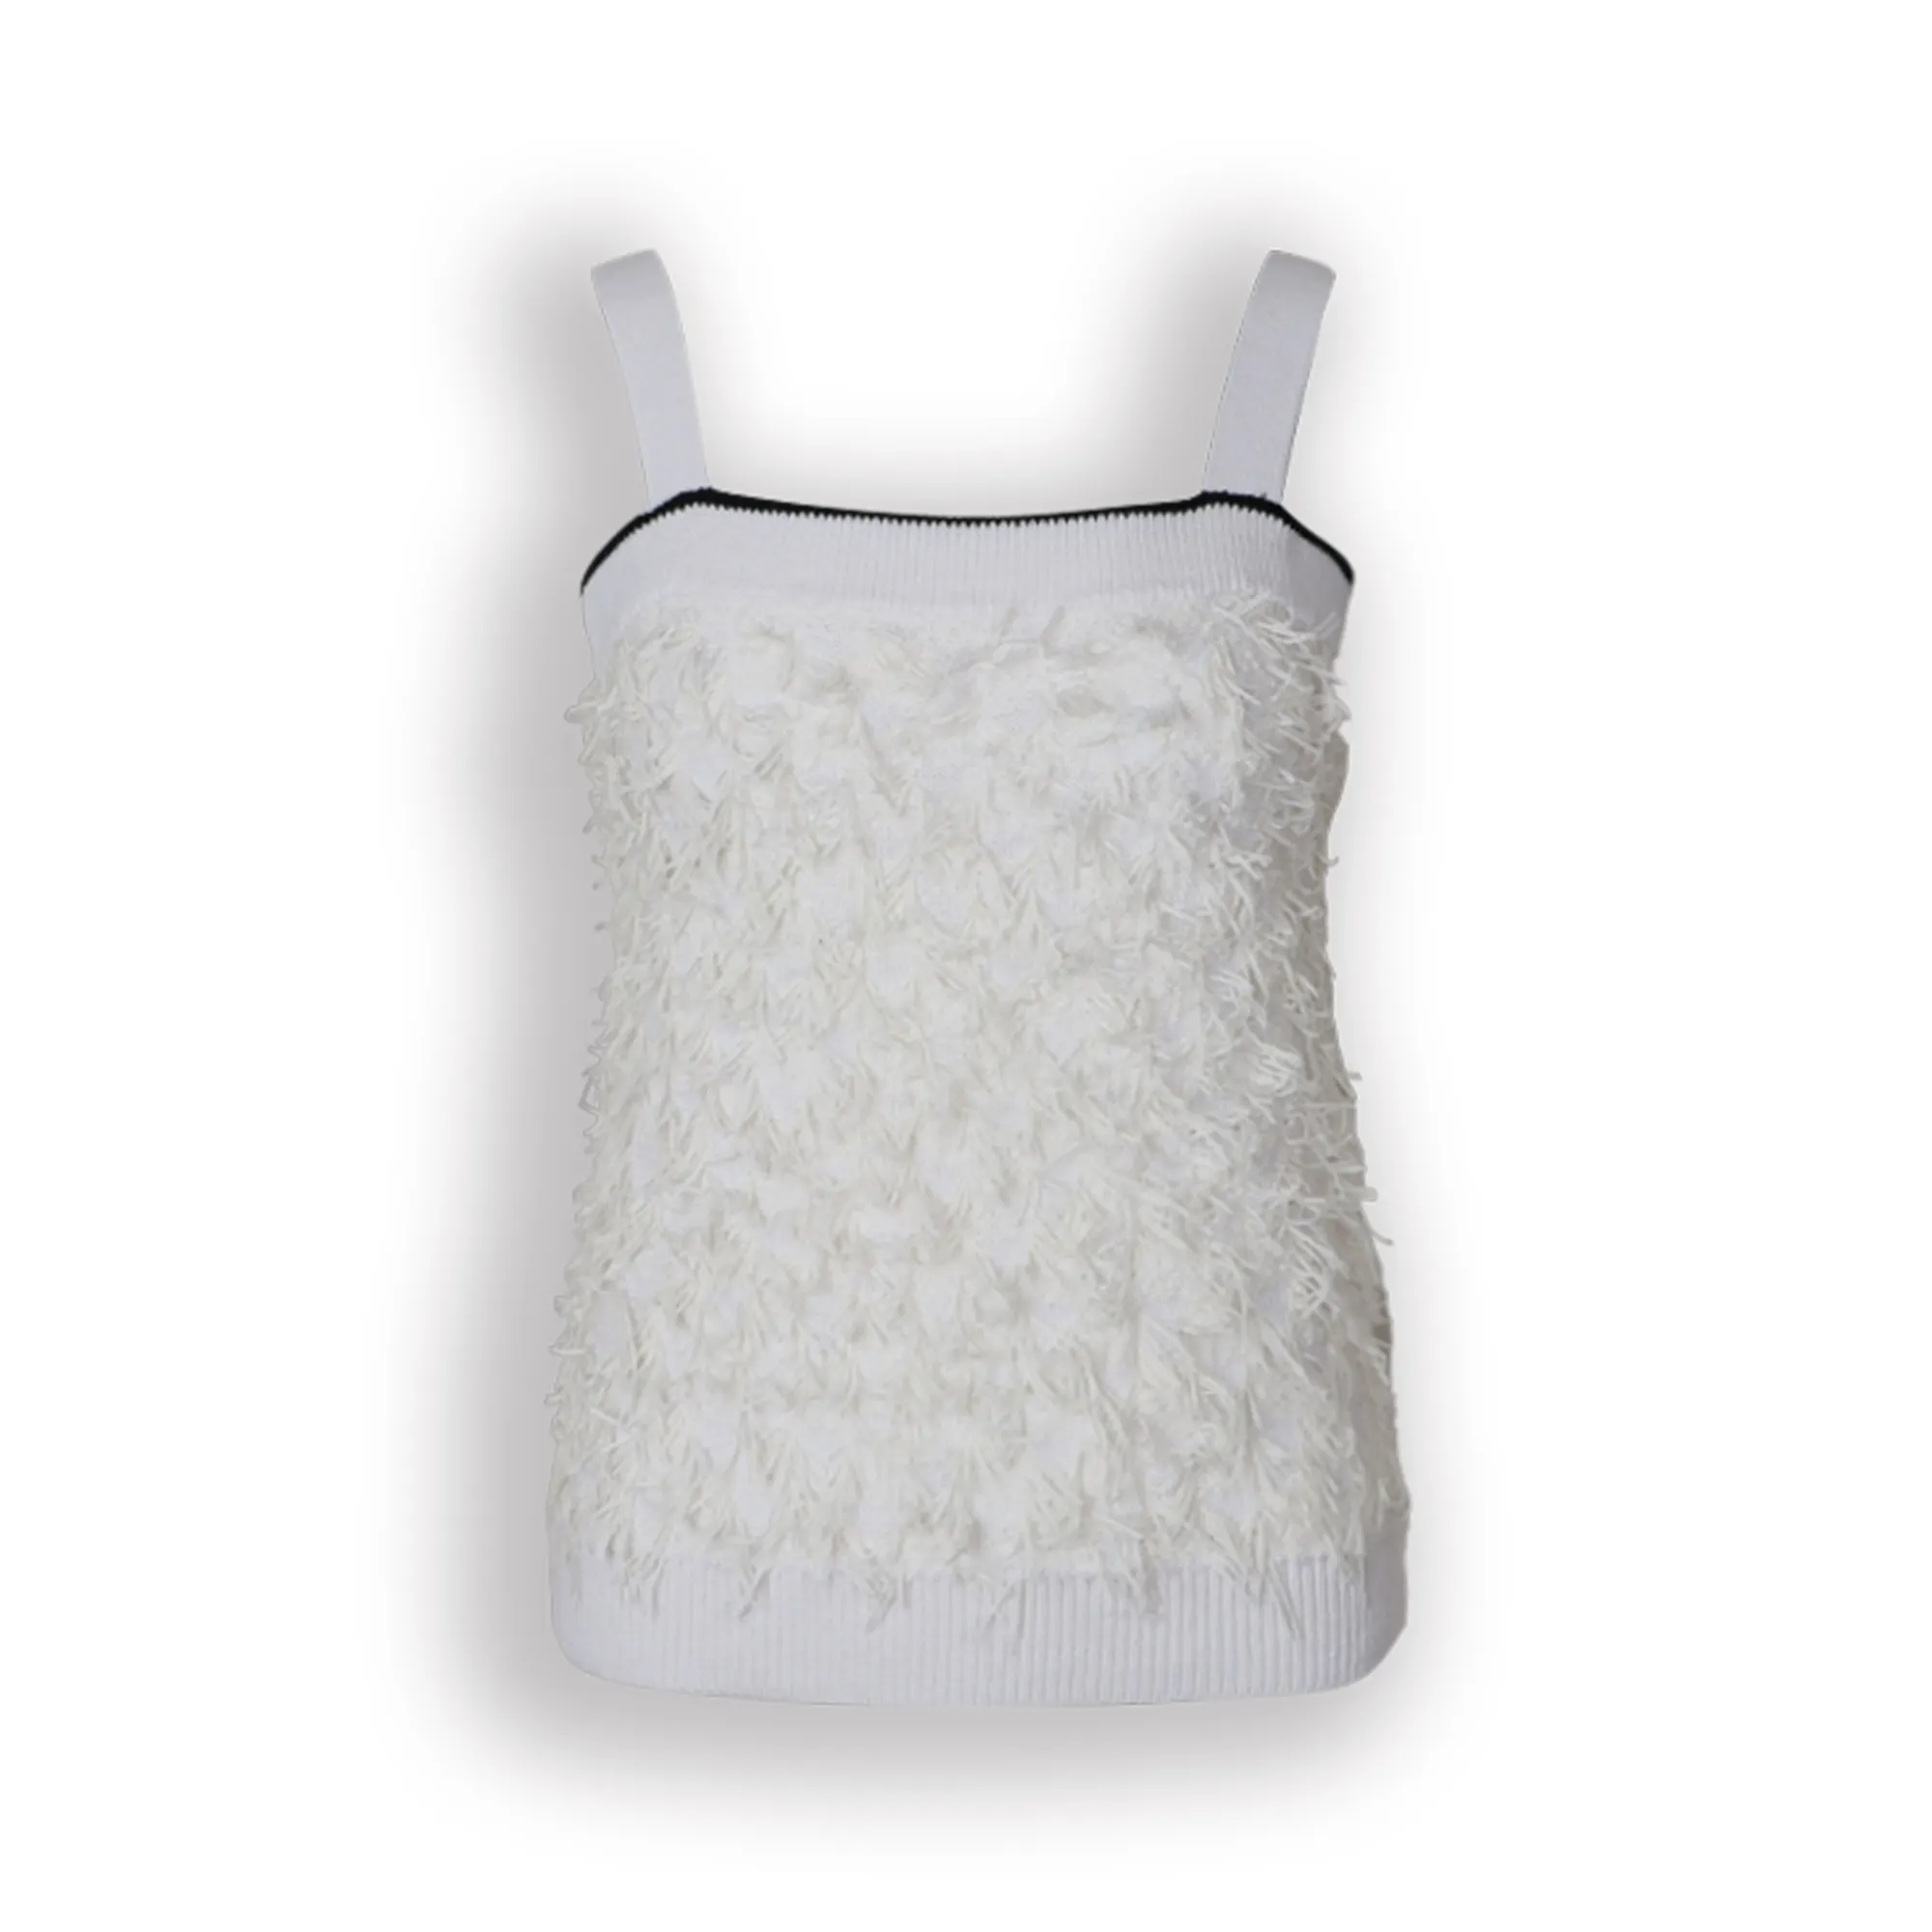 Ultimo prodotto di buona qualità cotone Sexy nappe maglia cinturino Crop Top per le donne